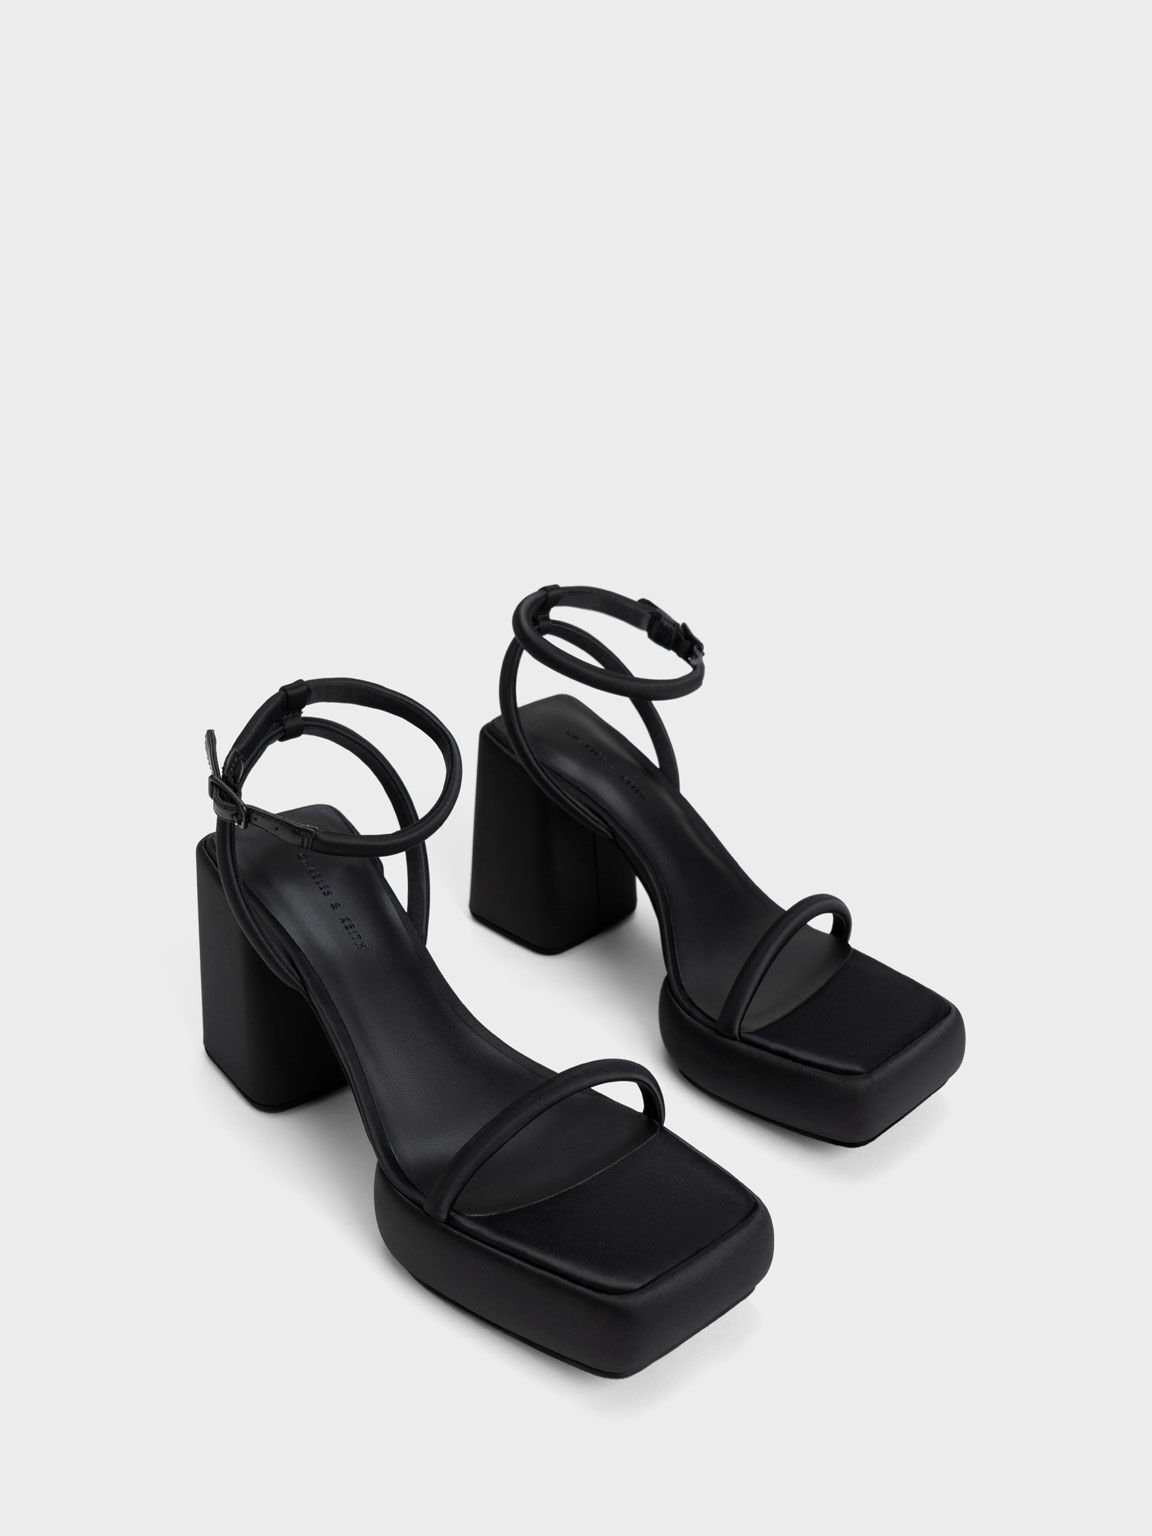 Lucile Satin Platform Sandals, Black, hi-res